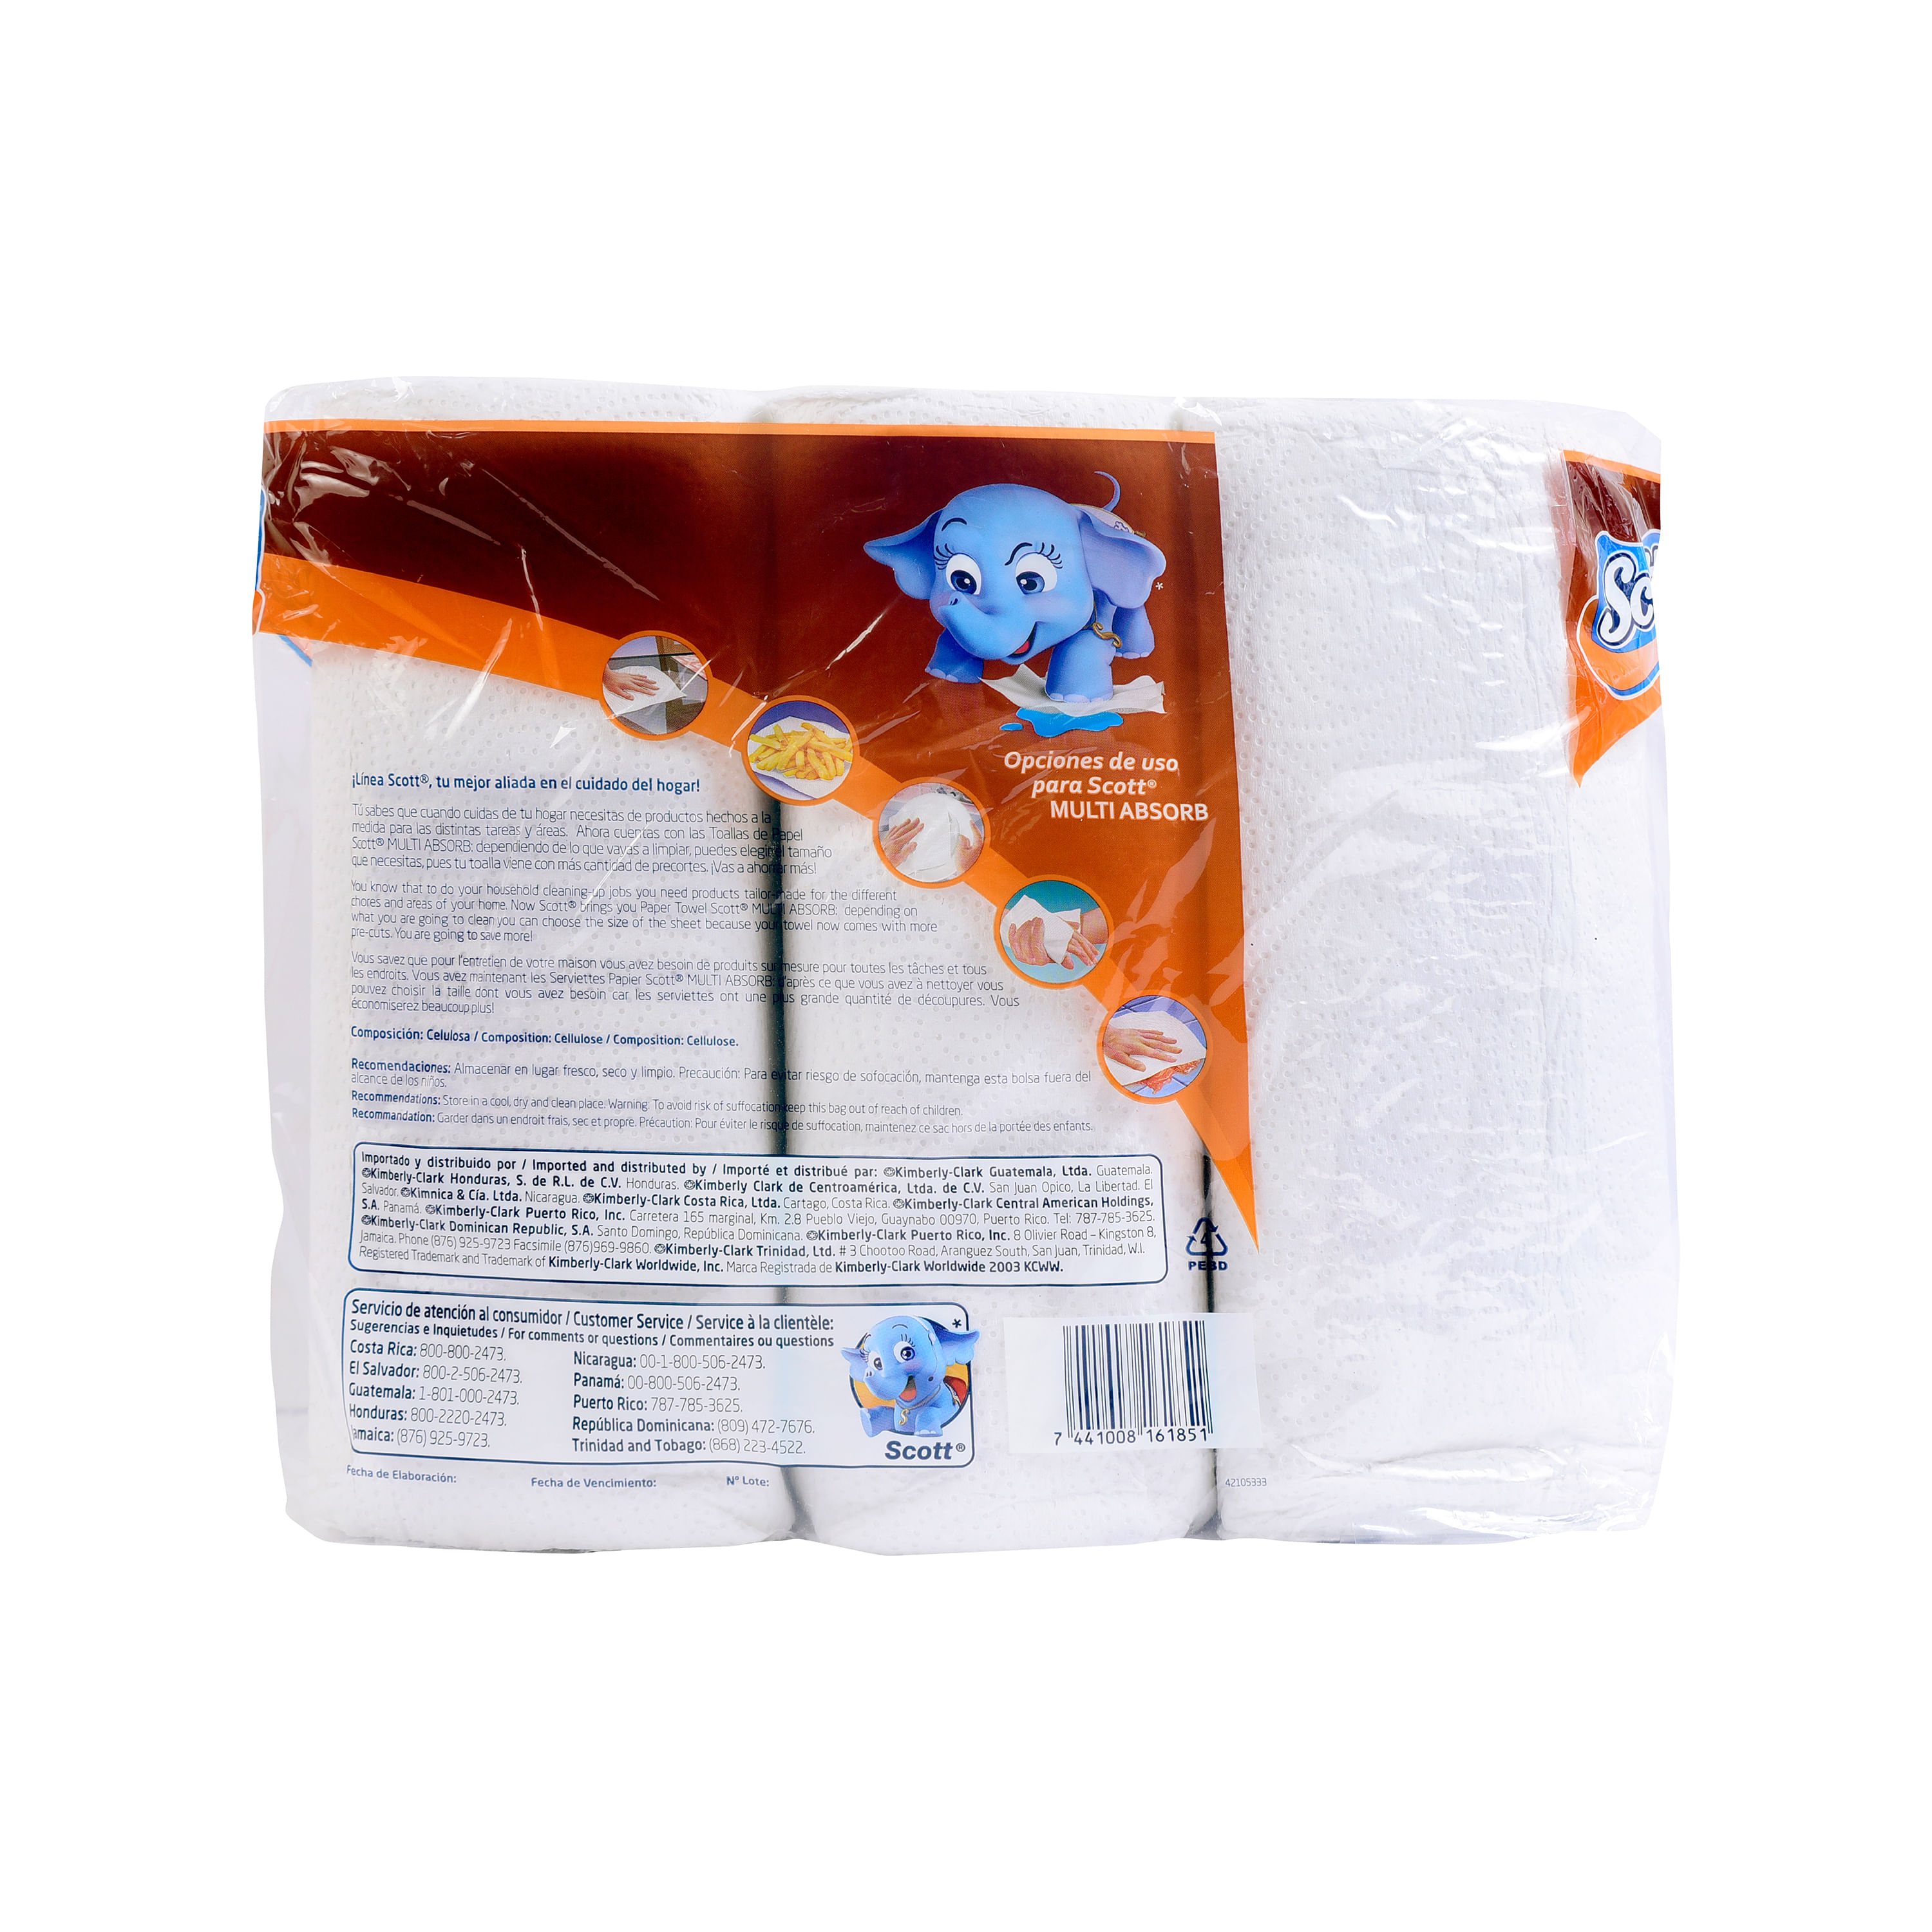 DeTodo Honduras - ¡Tenemos todo para equipar tu cocina!🤩 Encuentra en  nuestras tiendas el porta papel toalla L.35 y el rollo de papel toalla de  80 hojas a L.29🙌